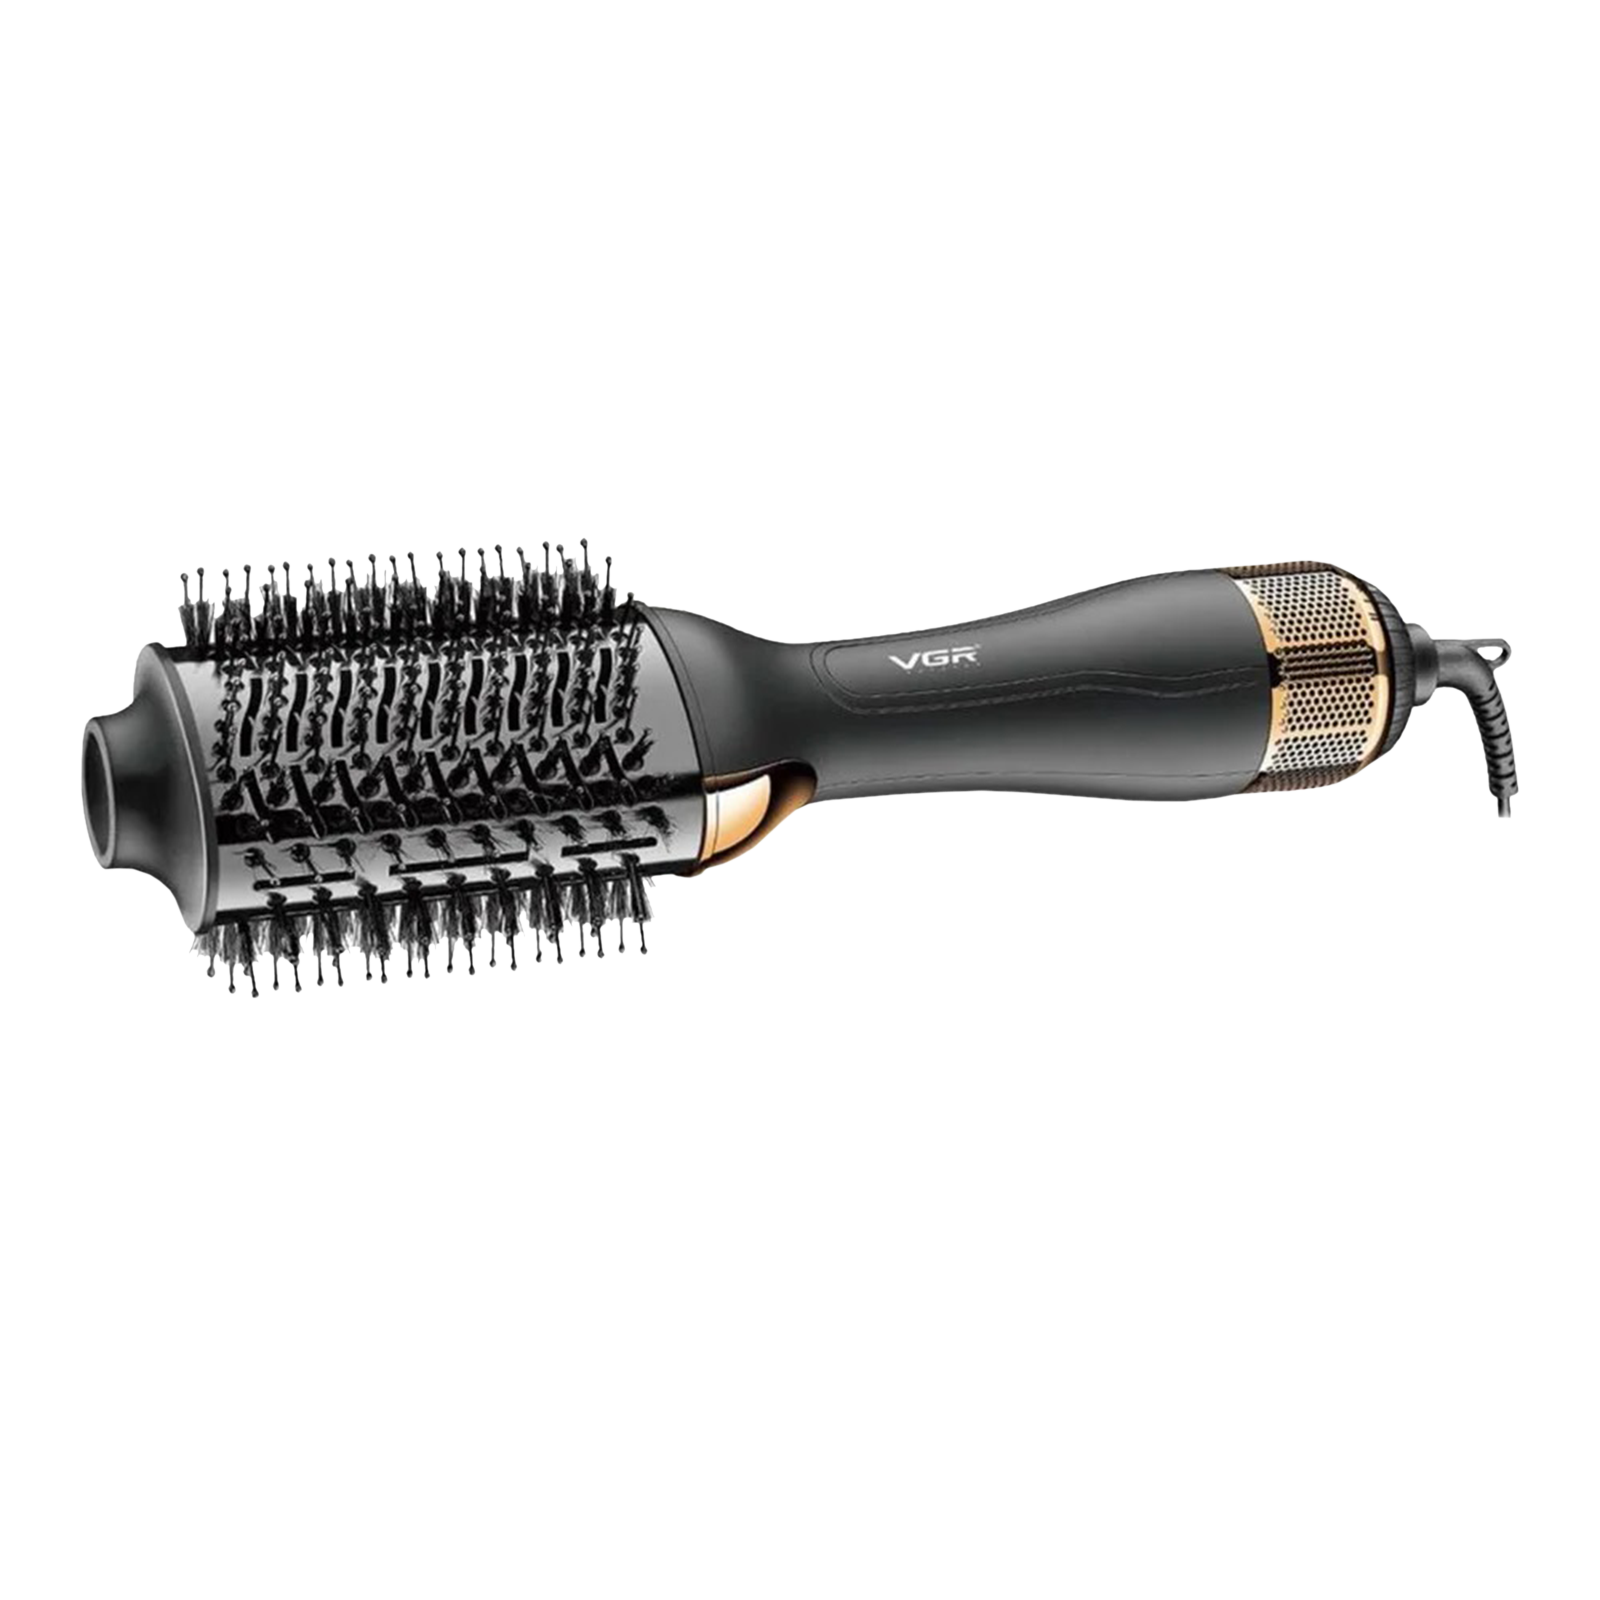 VGR Hair Dryer (360 Degree Swivel Cord, VGR 492, Black)_1